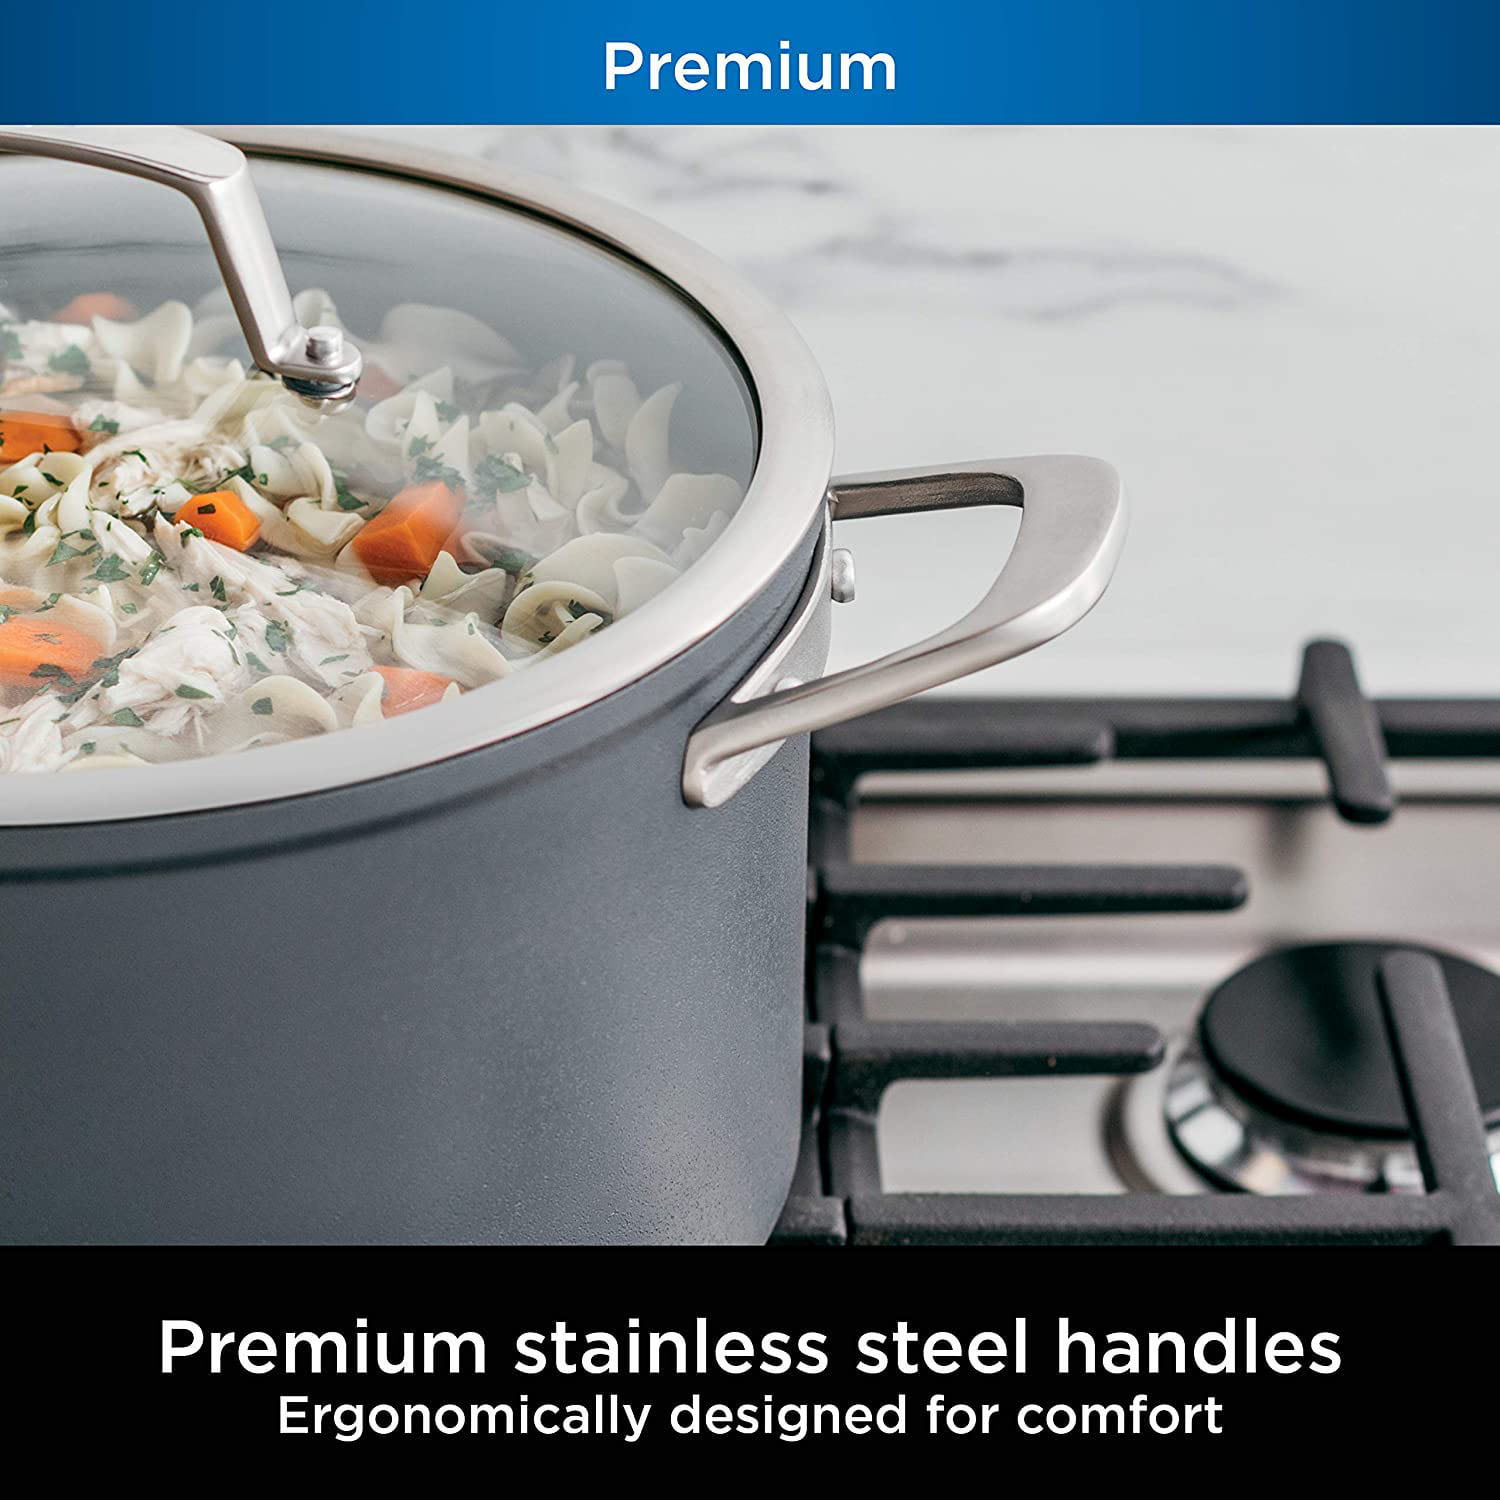 Ninja Foodi NeverStick Premium 3-Quart Aluminum Stock Pot in the